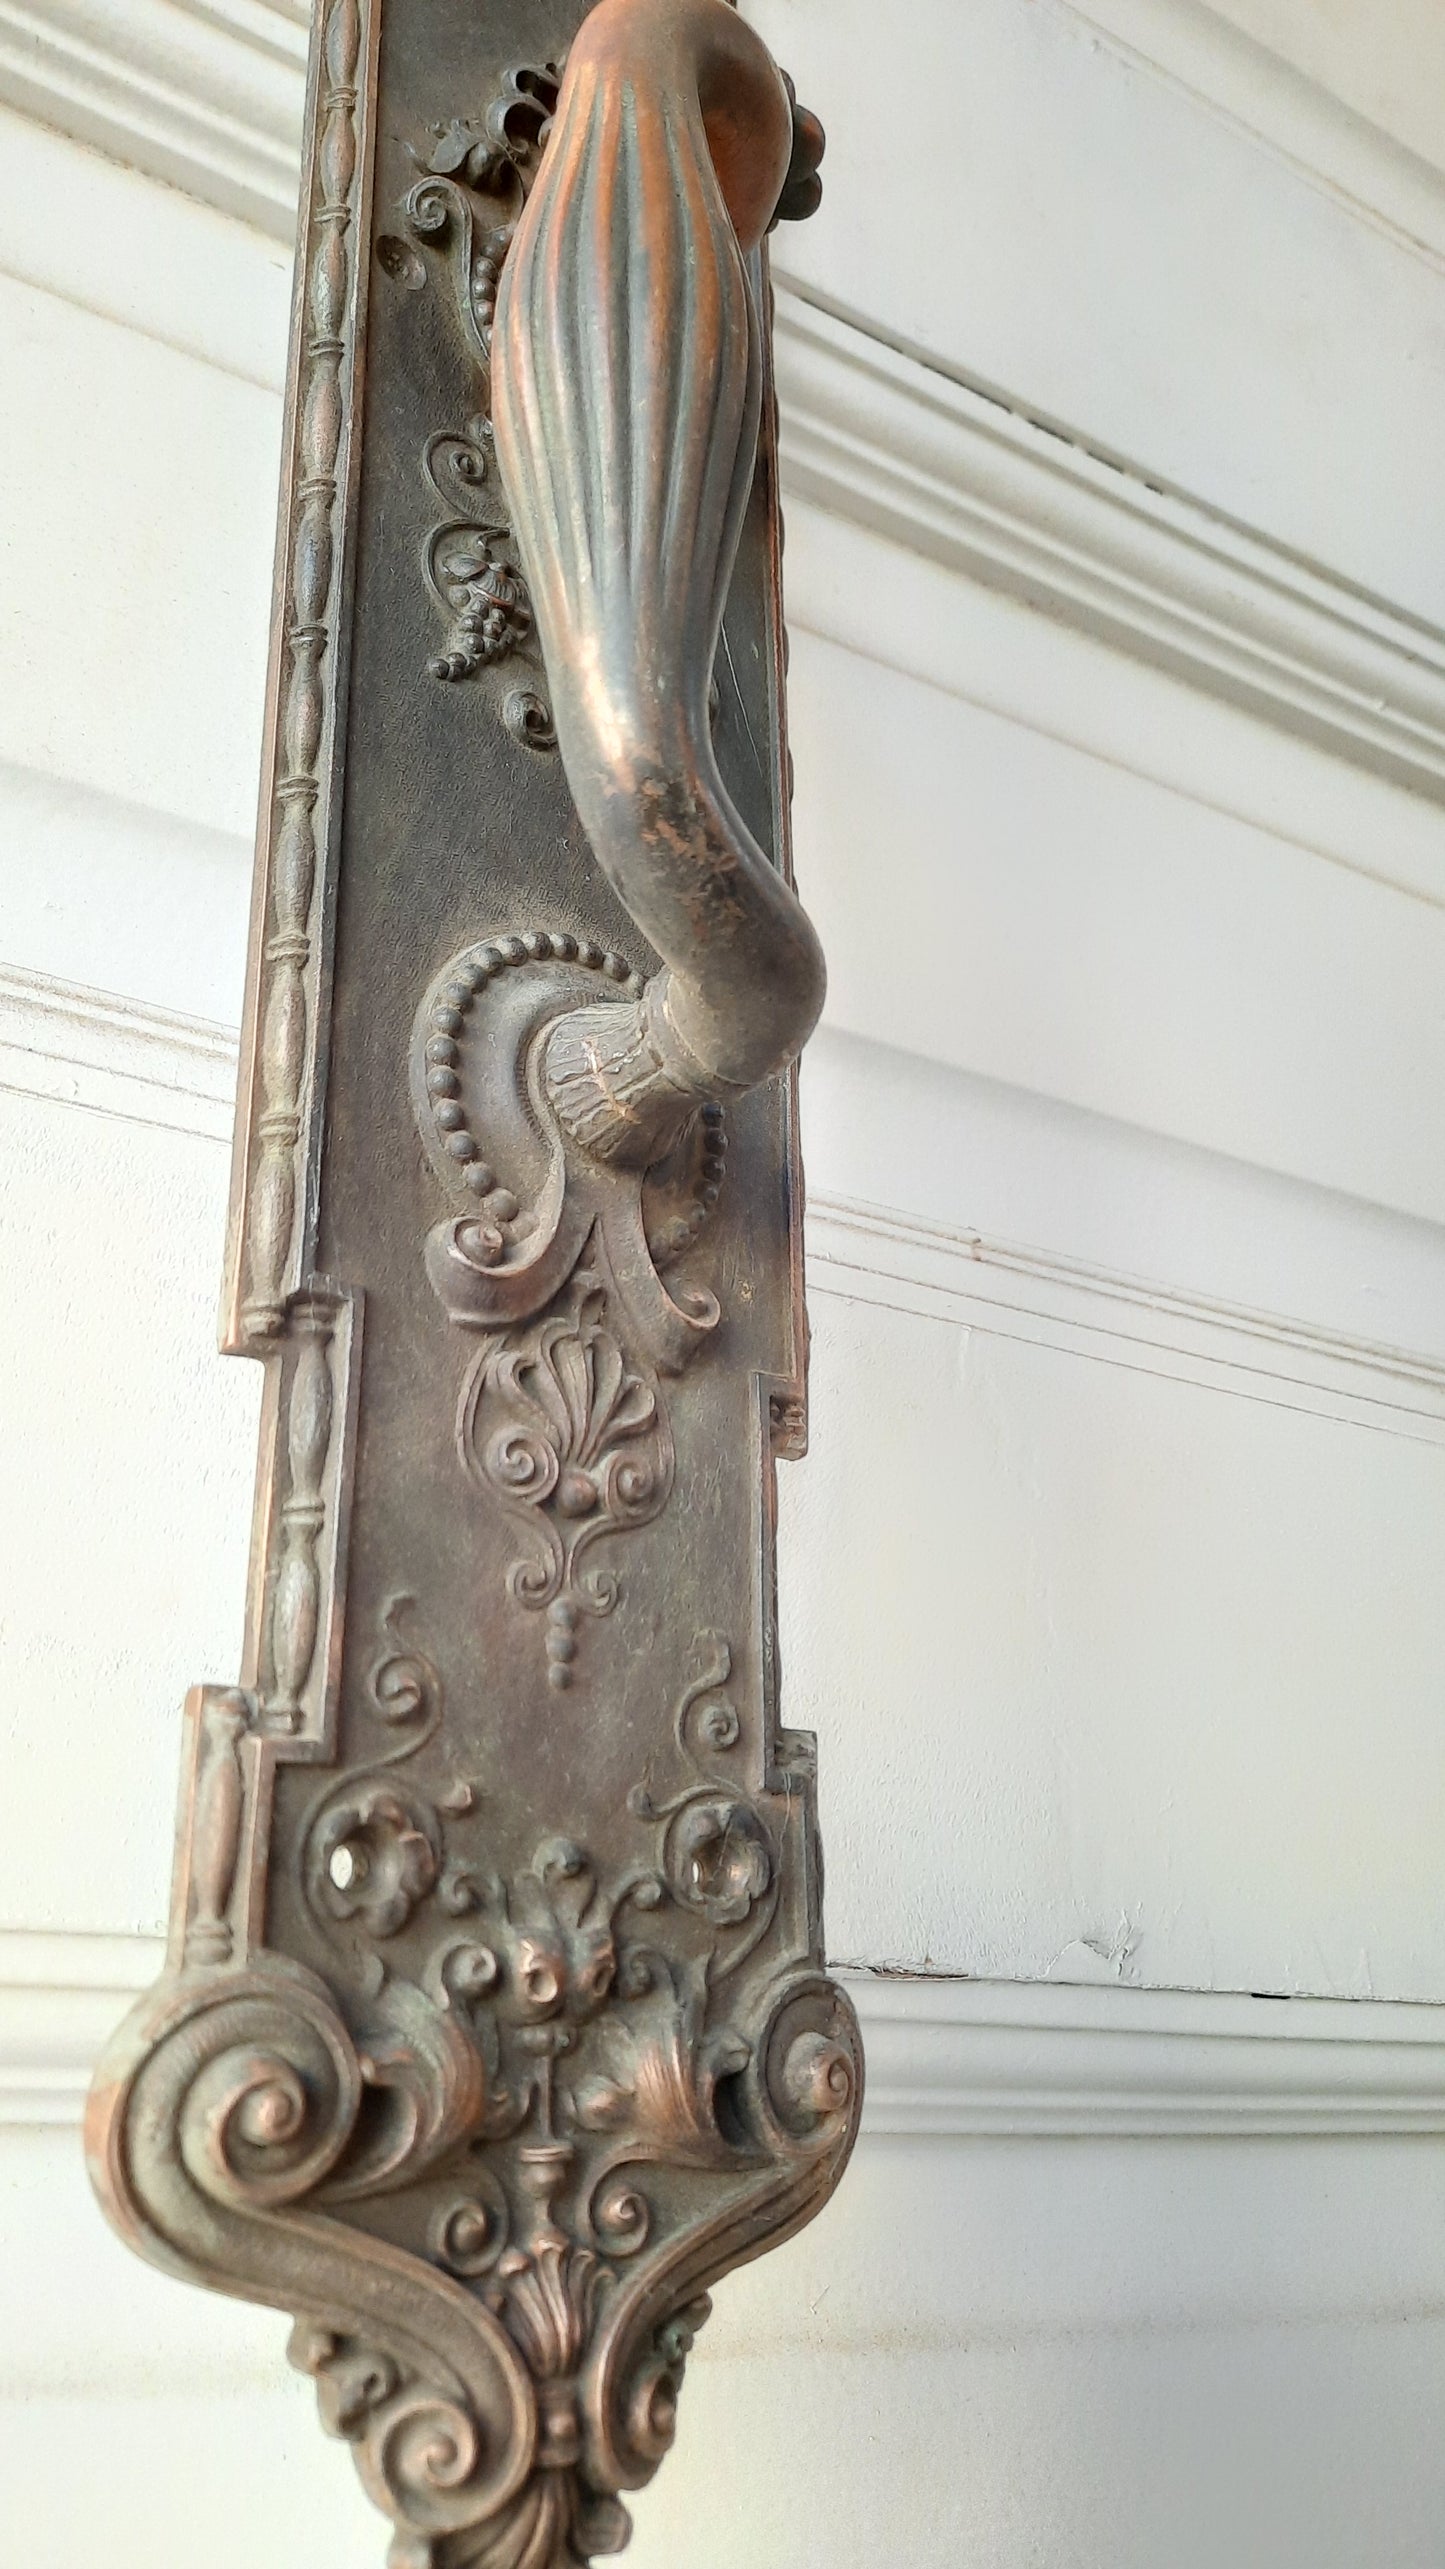 Pair of Solid Bronze 21" Double Door Pulls, Monumental Thumb Latch Door Handles